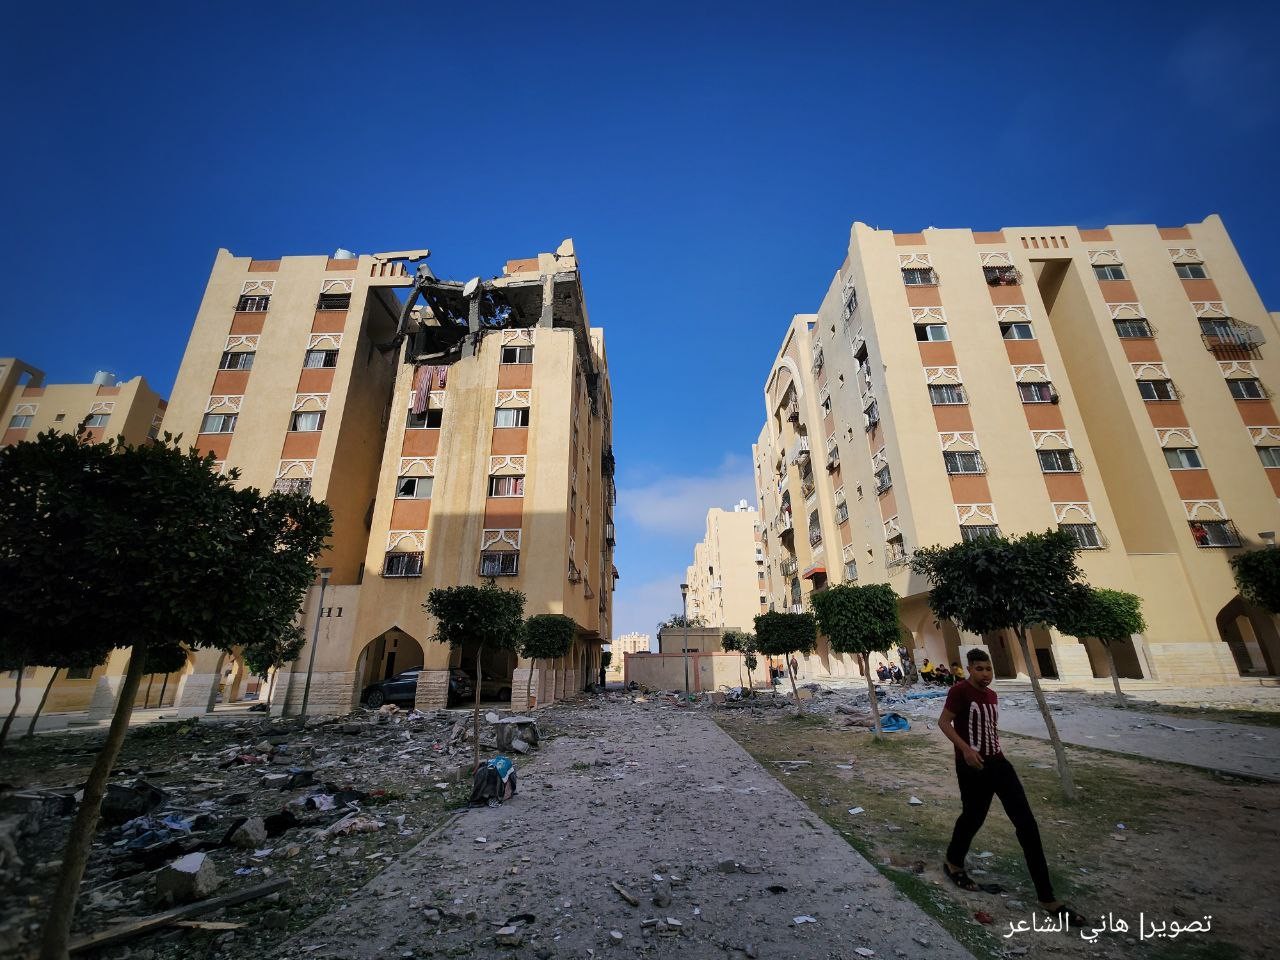 دمار كبير يخلفه القصف الإسرائيلي على شقة سكنية في مدينة حمد القطرية بخانيونس 56.jpg